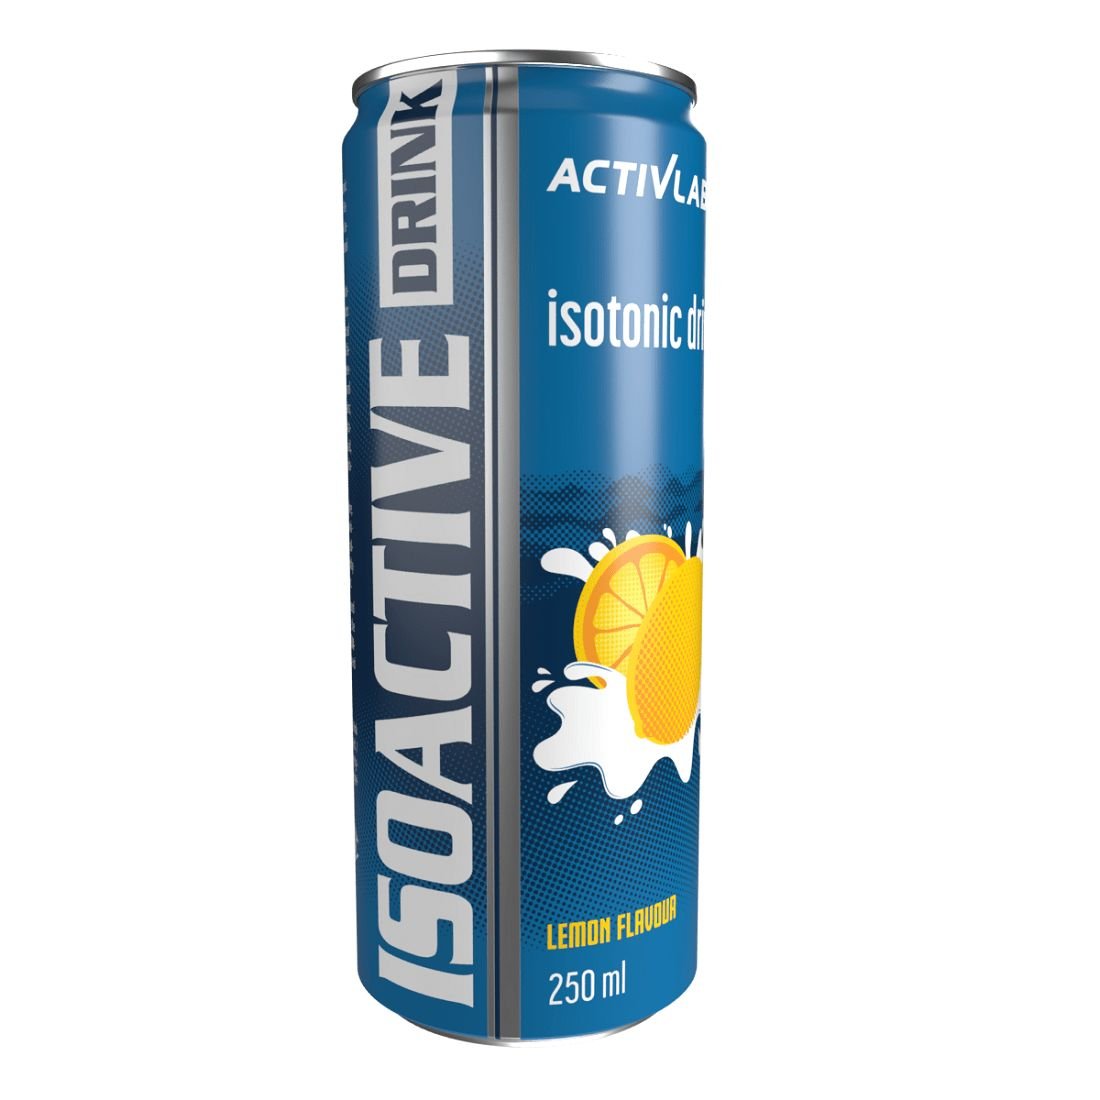 Изотоник Activlab Isoactive Drink, 250 мл Лимон,  ml, ActivLab. Isotonic. General Health recuperación Electrolyte recovery 